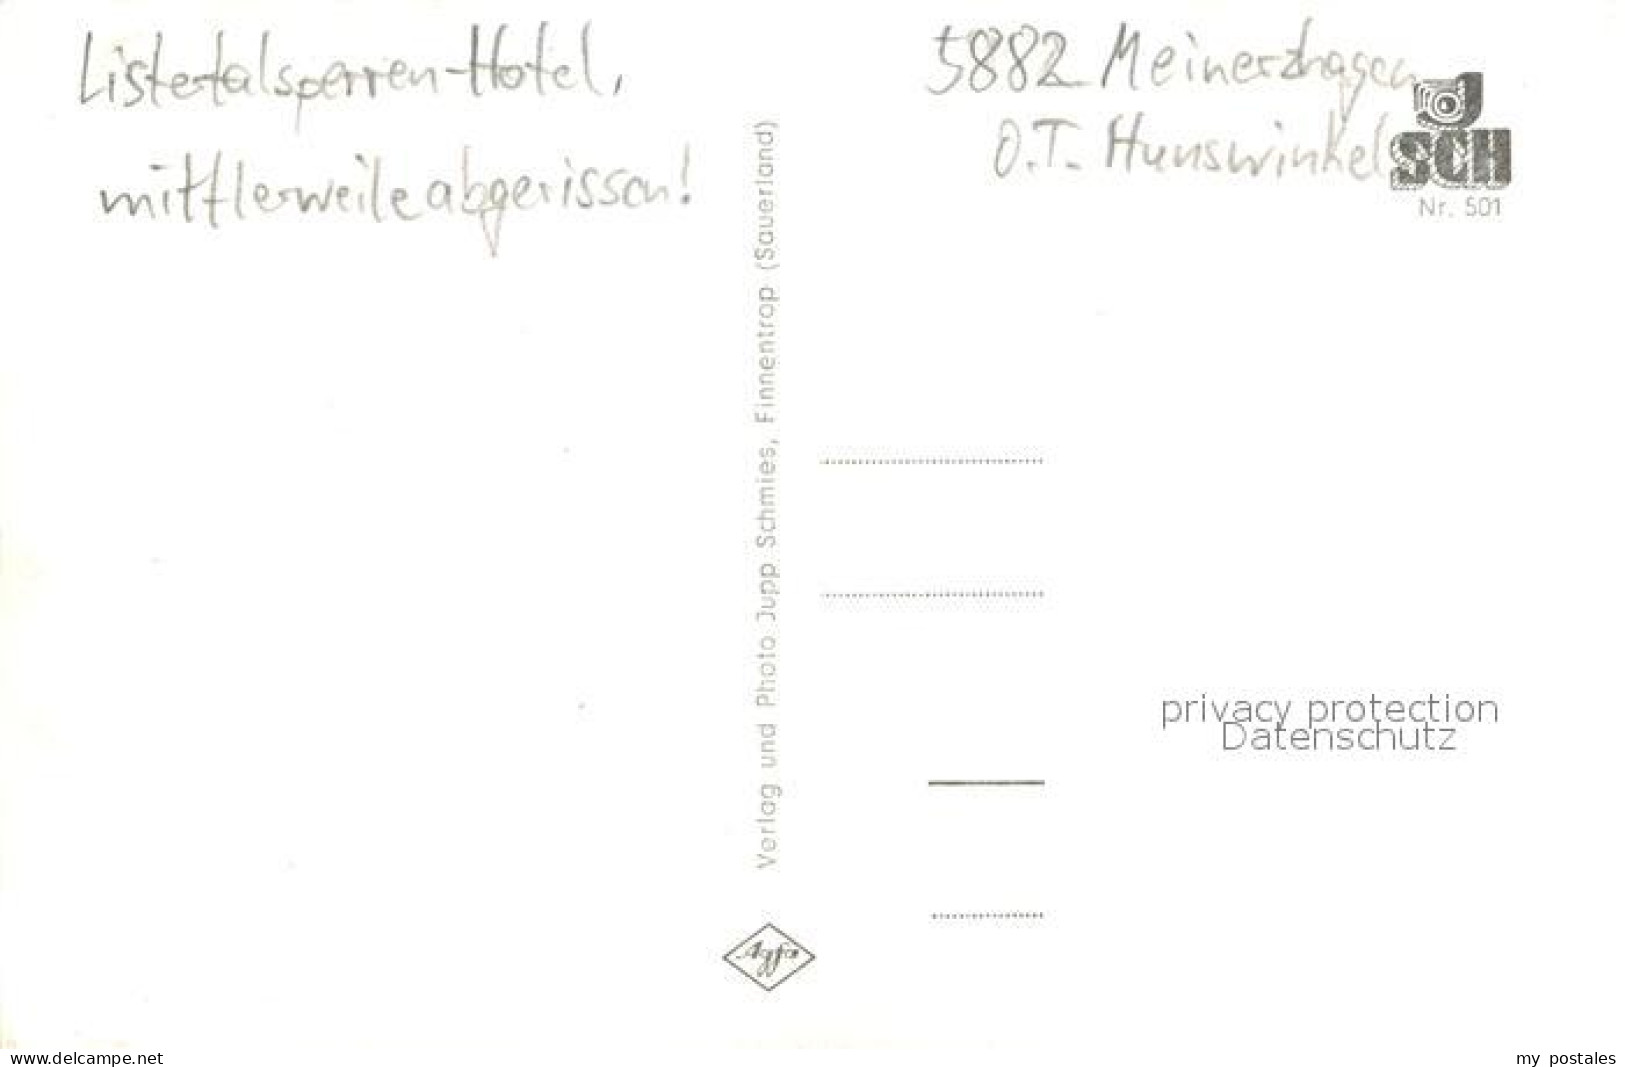 73700185 Meinerzhagen Lister-Talsperre Hotel Meinerzhagen - Meinerzhagen